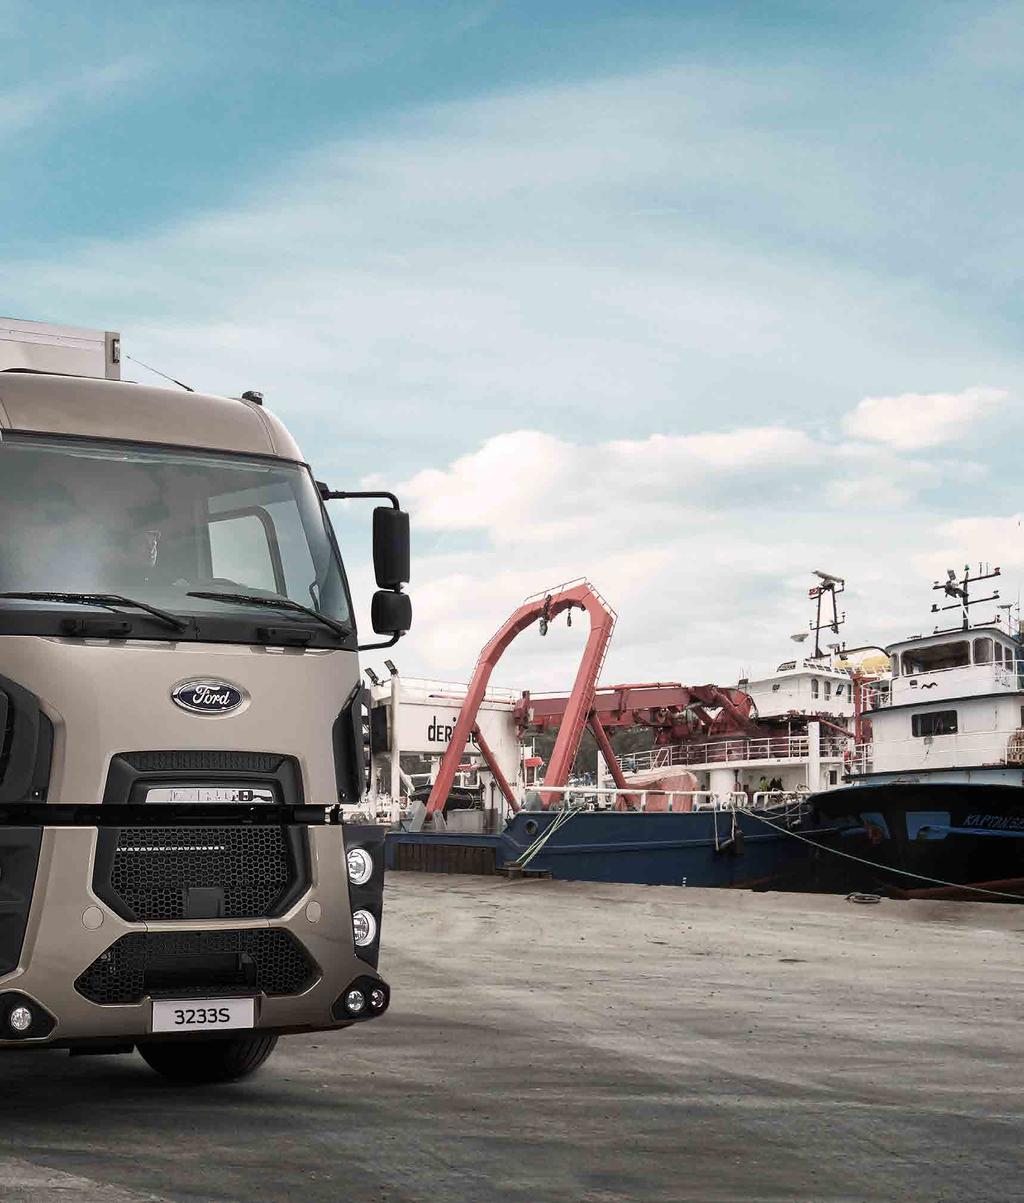 Munkában az innováció Az új Ford Trucks közúti járművekben elérhető fejlesztések leveszik a válláról a terheket.